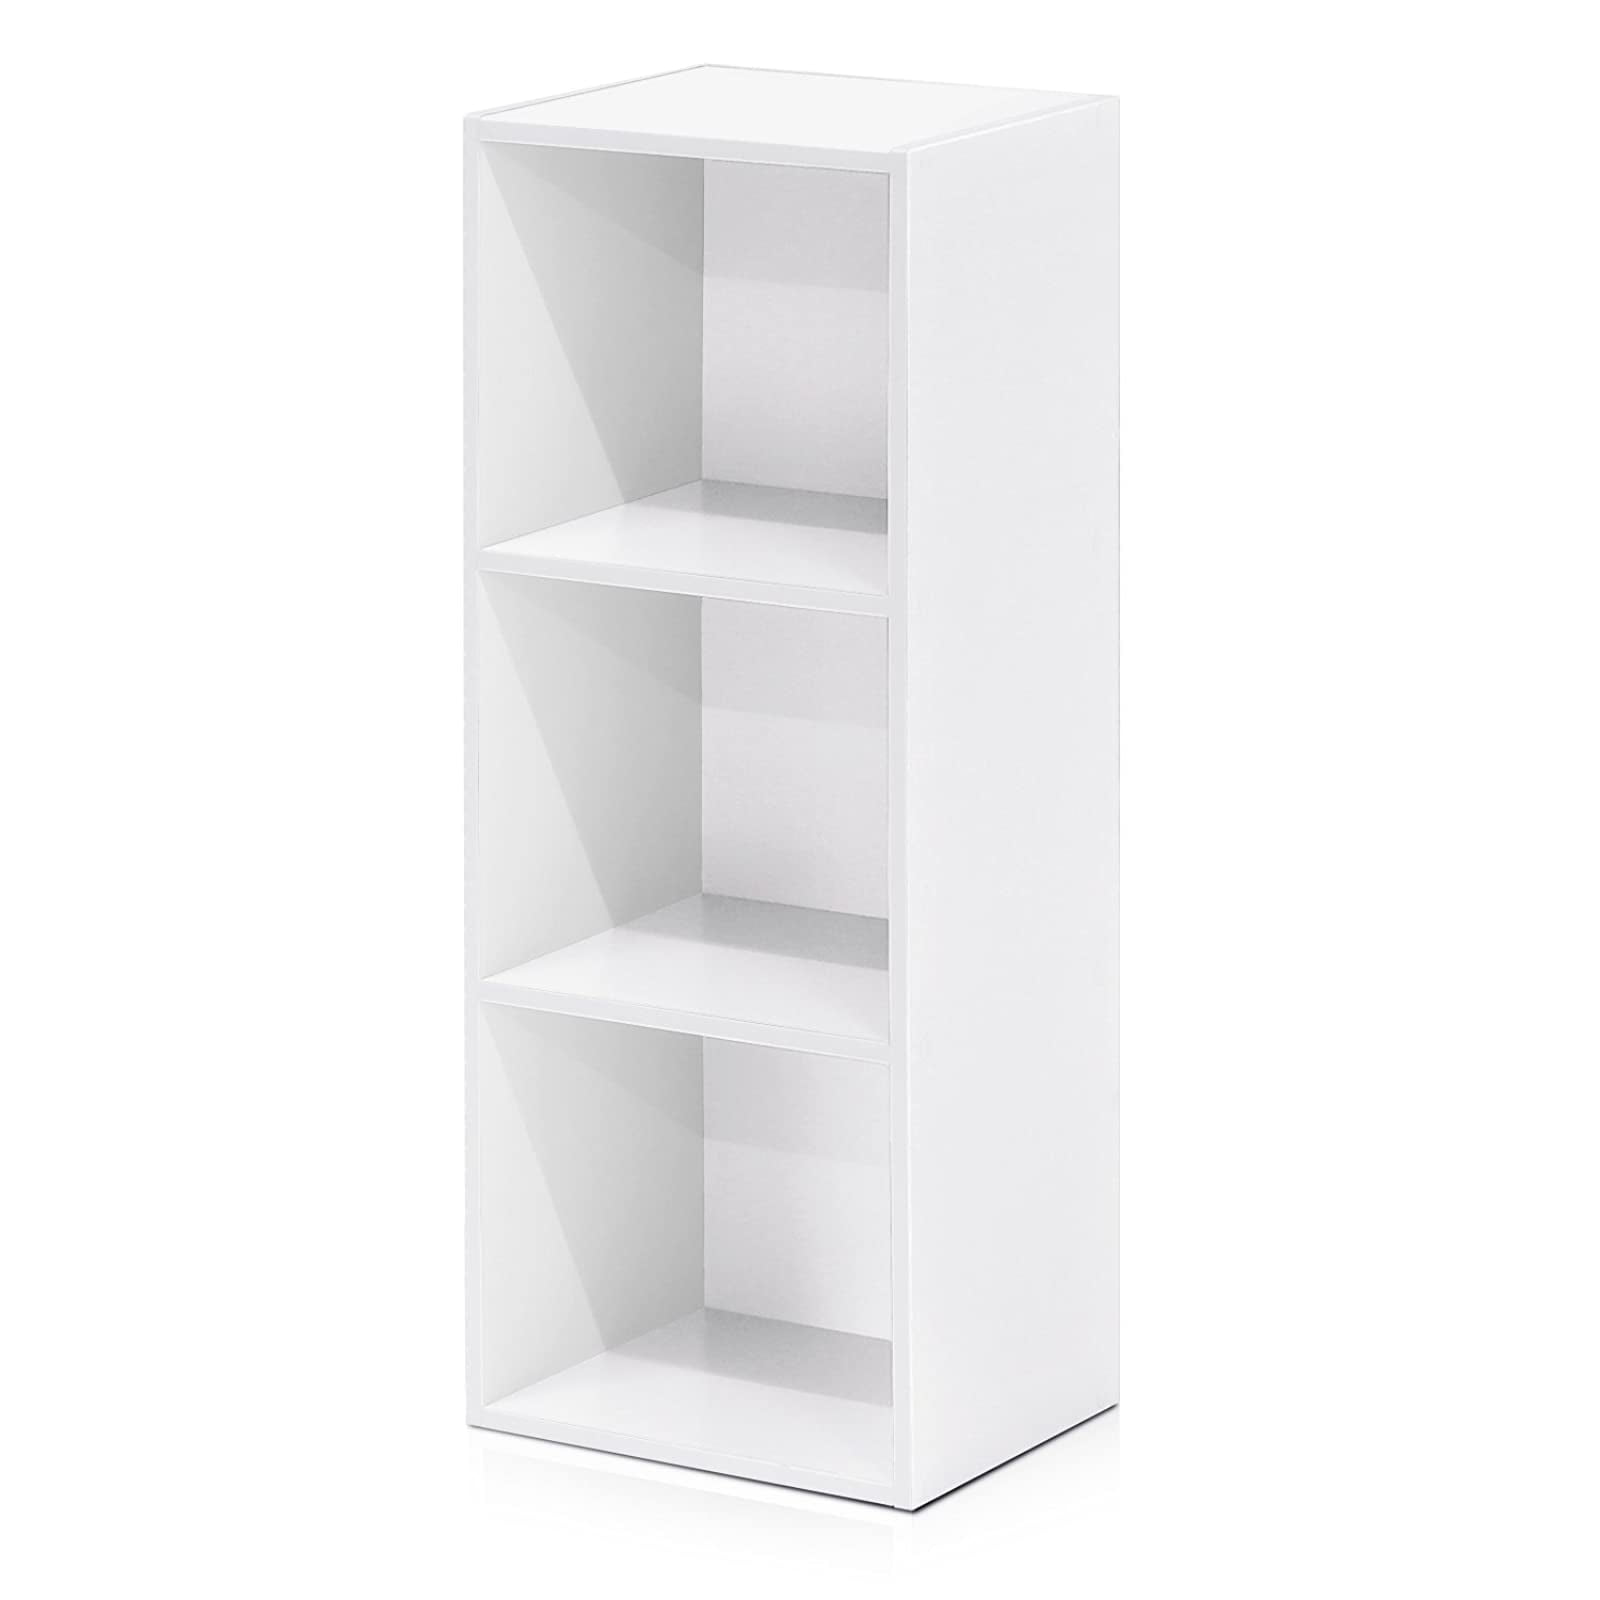 Furinno 3 Tier Open Shelf Bookcase, White 3 Shelf Bookcase